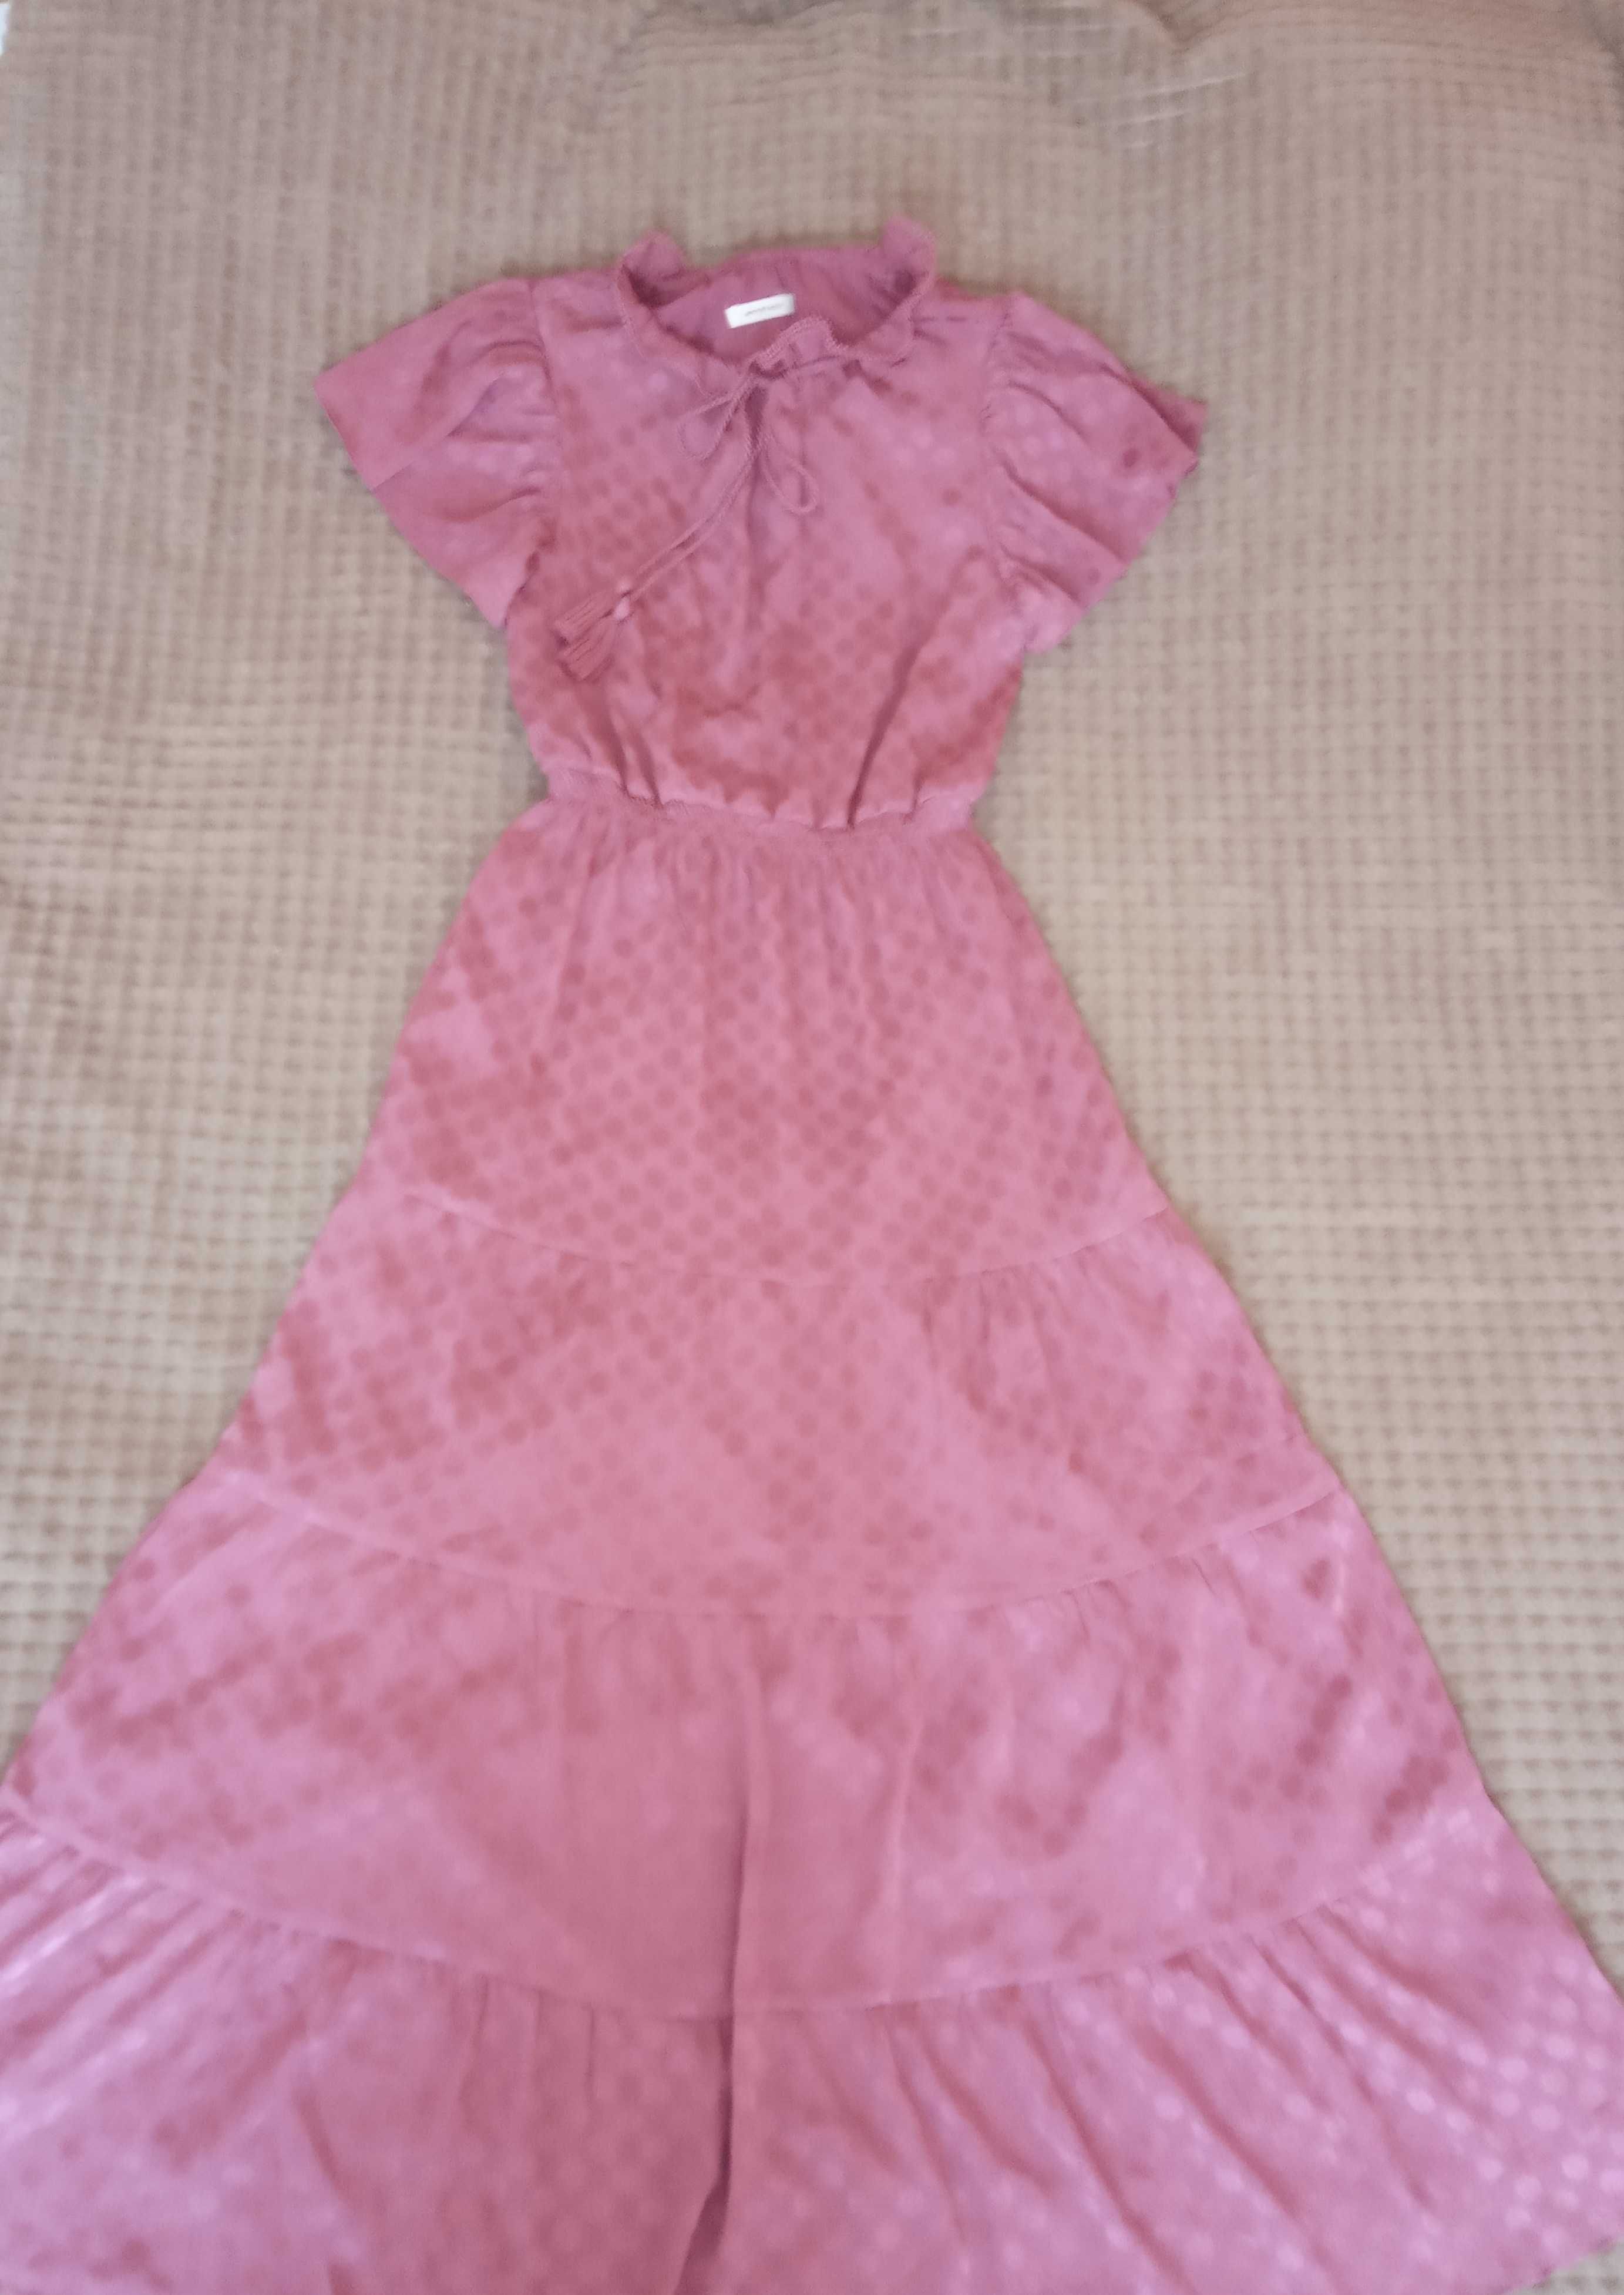 Довга літня сукня (макси платье,плаття) Розмір S-M